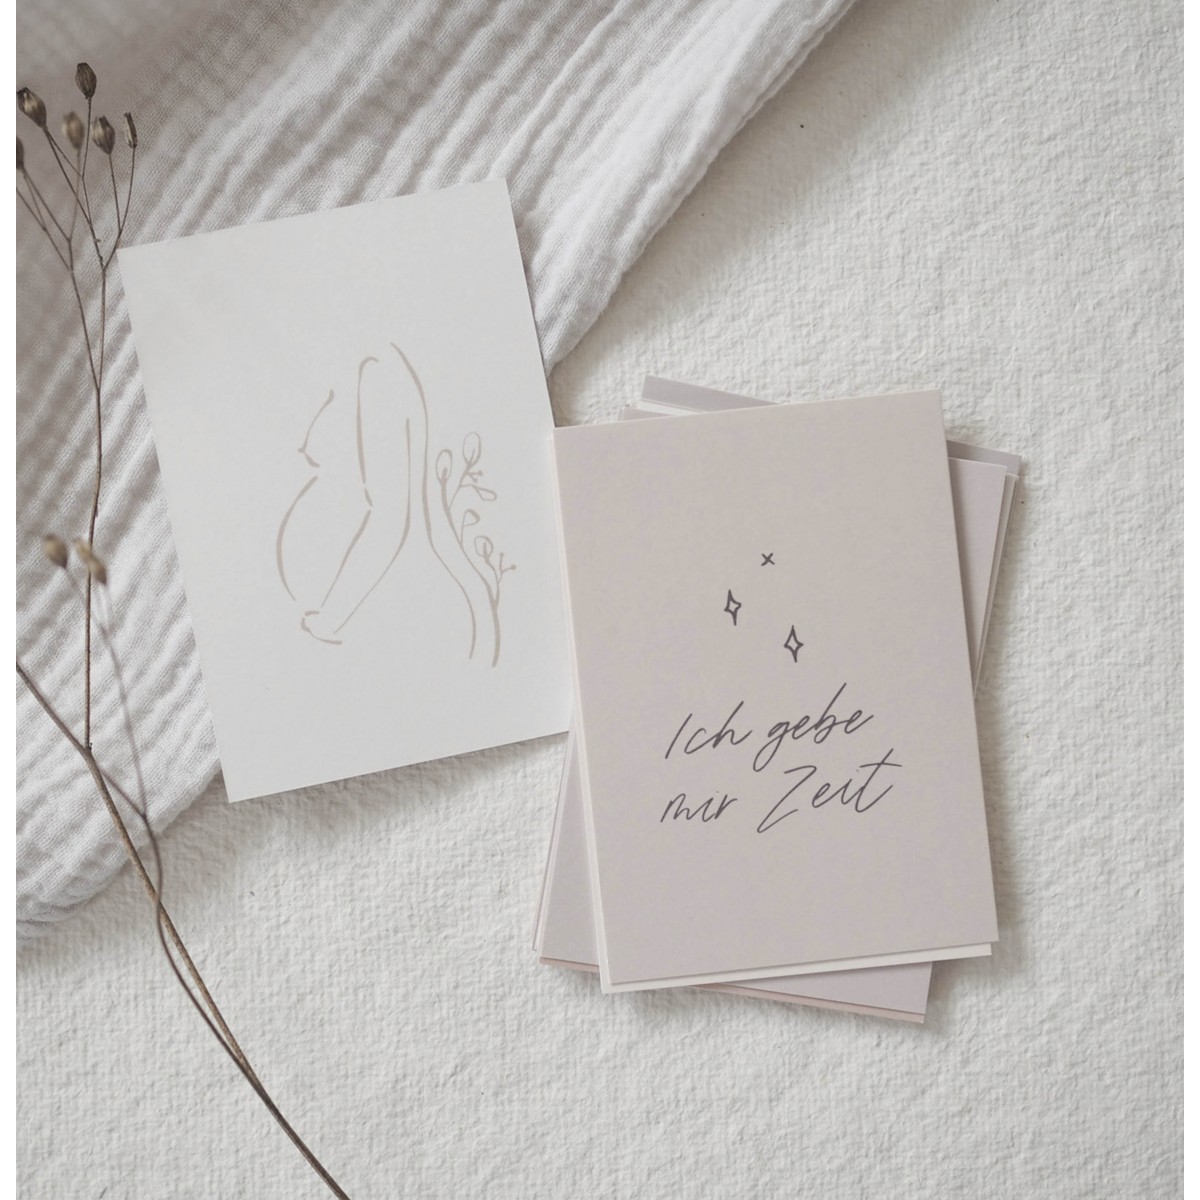 Kruth Design AFFIRMATIONSKARTEN SET MAMA / Mutmacher Karten 22 Karten Sprüchen und Illustrationen für die Schwangerschaft Wochenbett Geburt Affirmationen